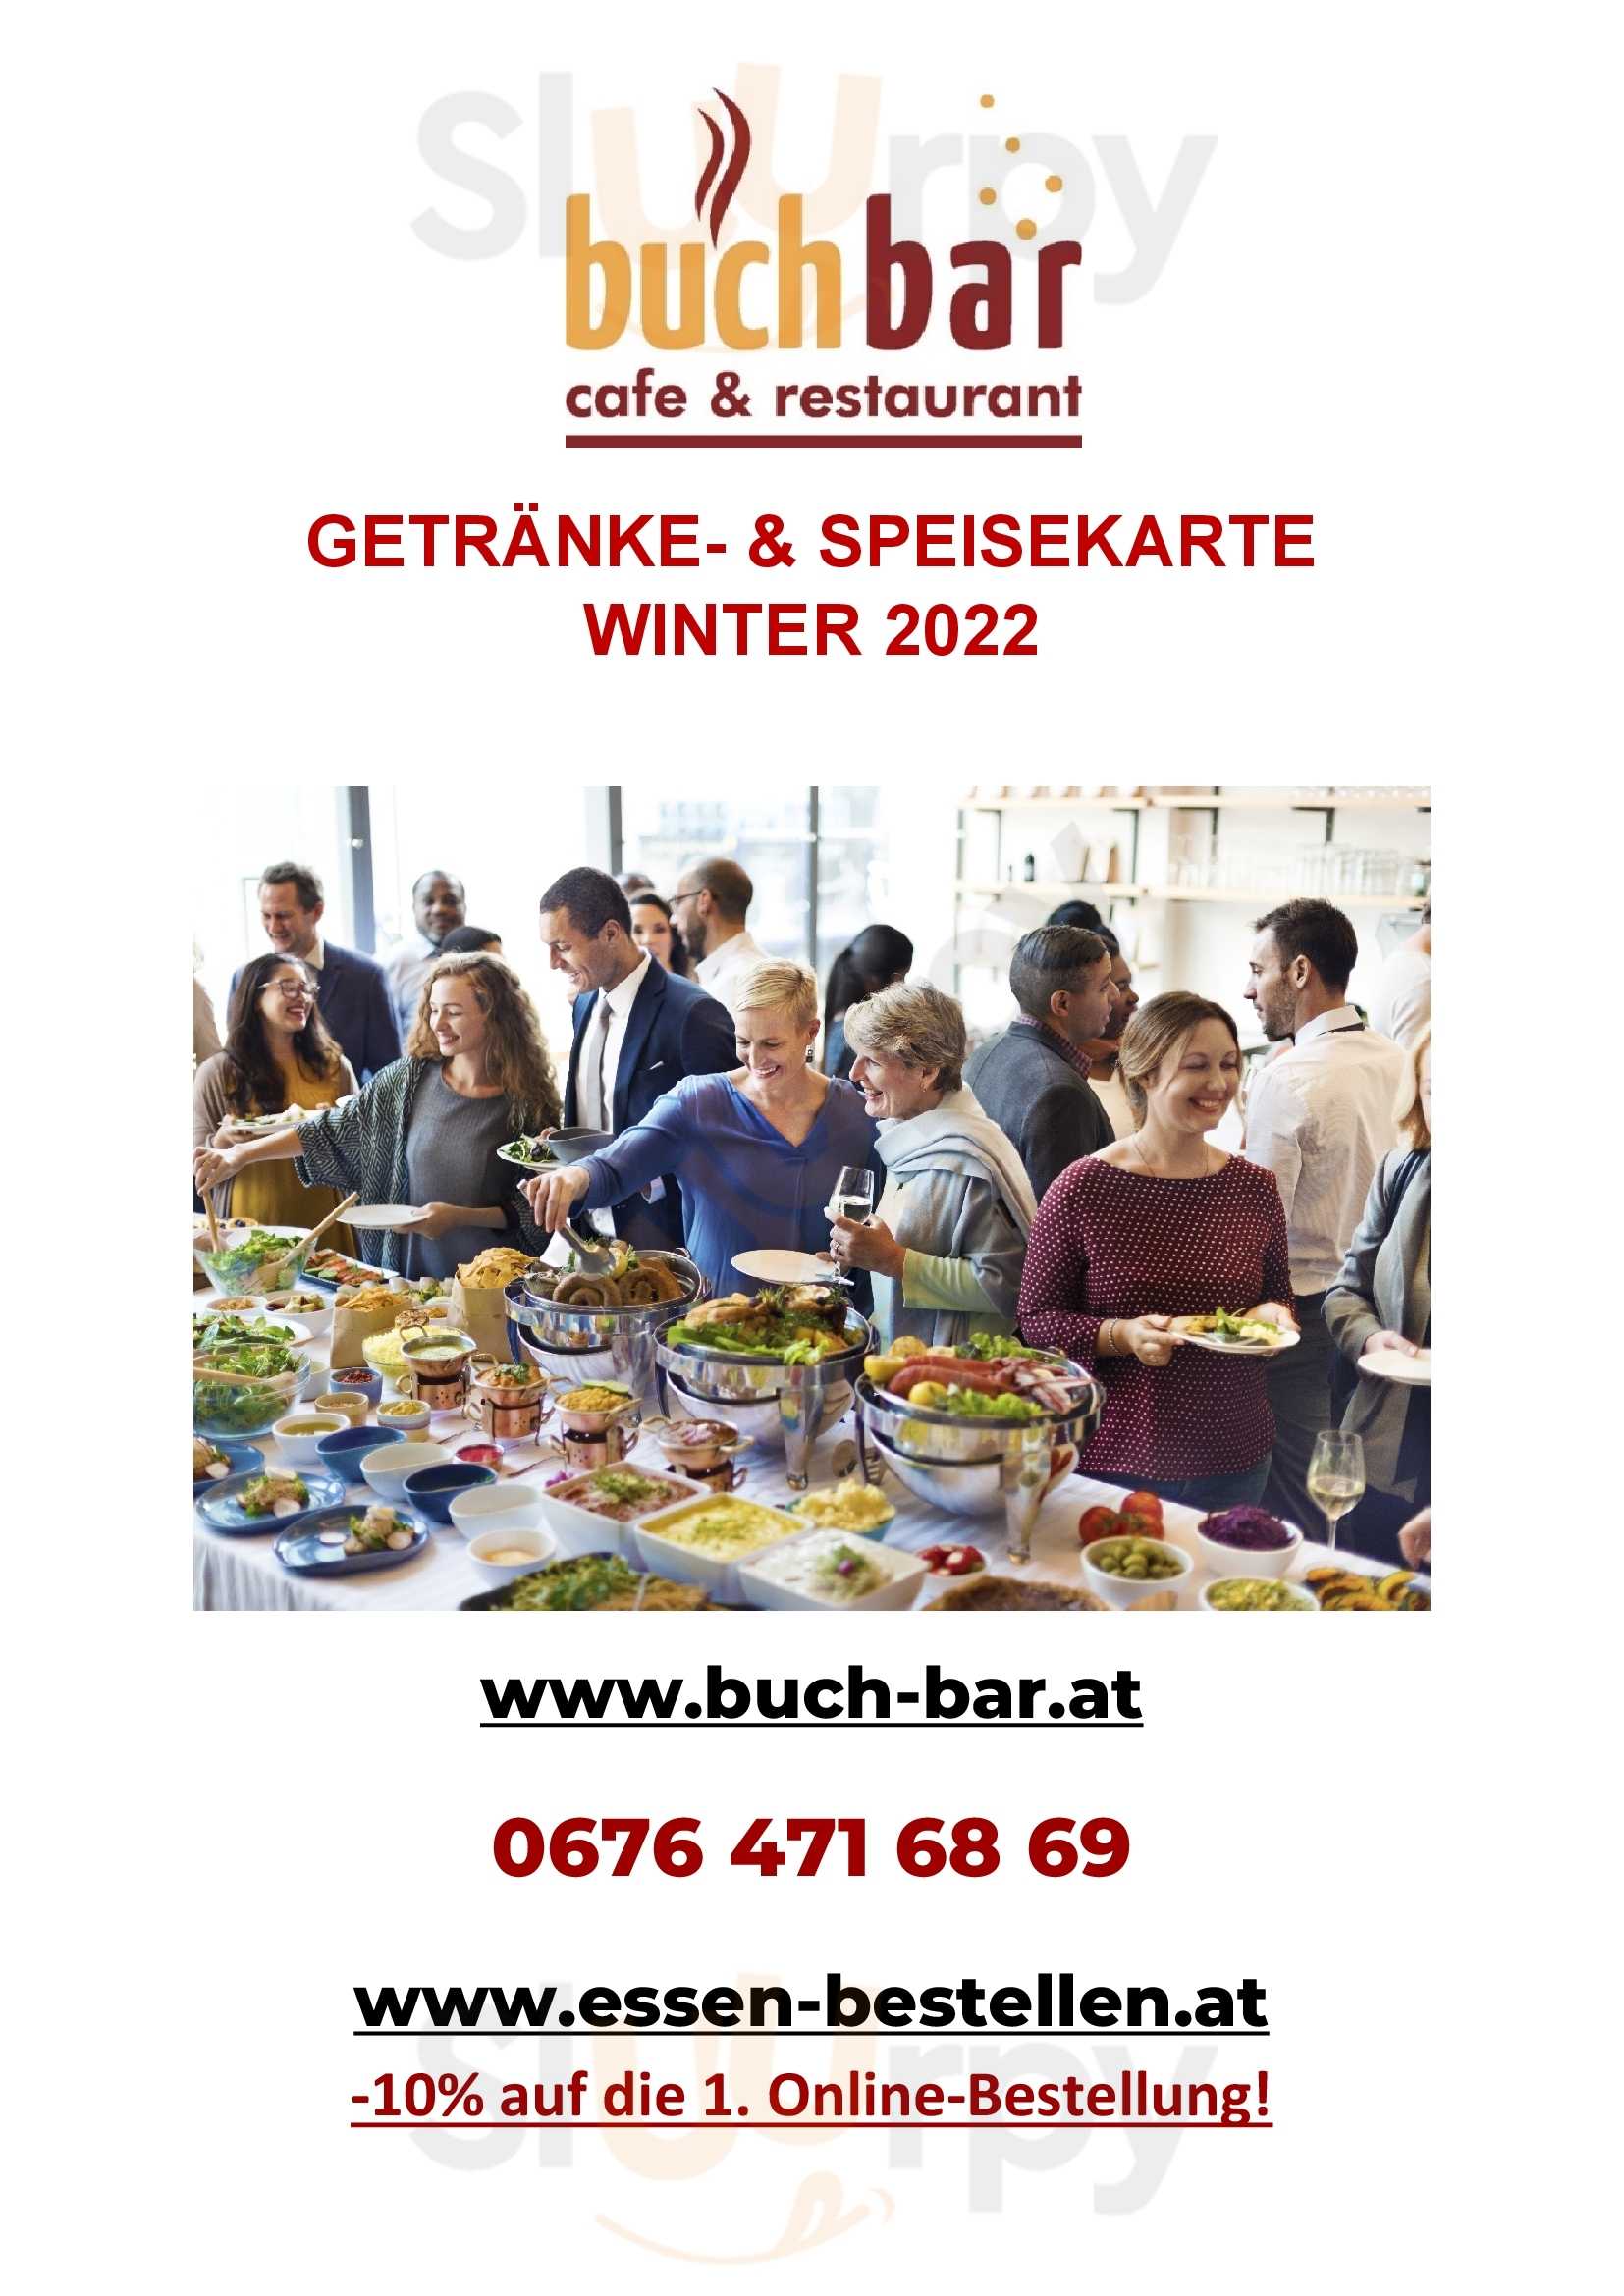 Buchbar Cafe & Restaurant Brunn am Gebirge Menu - 1